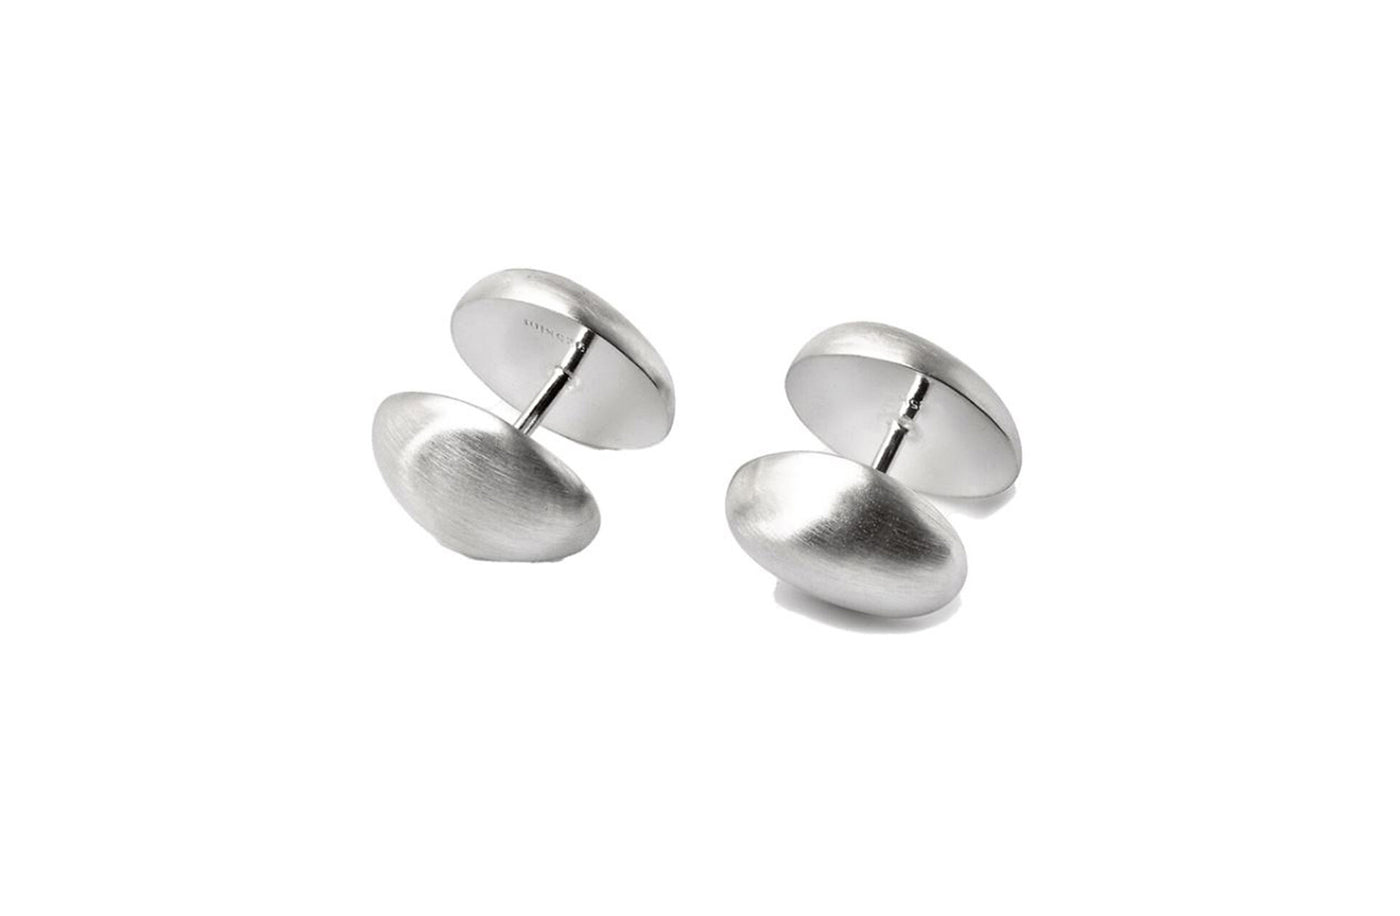 Pebble Cufflinks in Sterling Silver